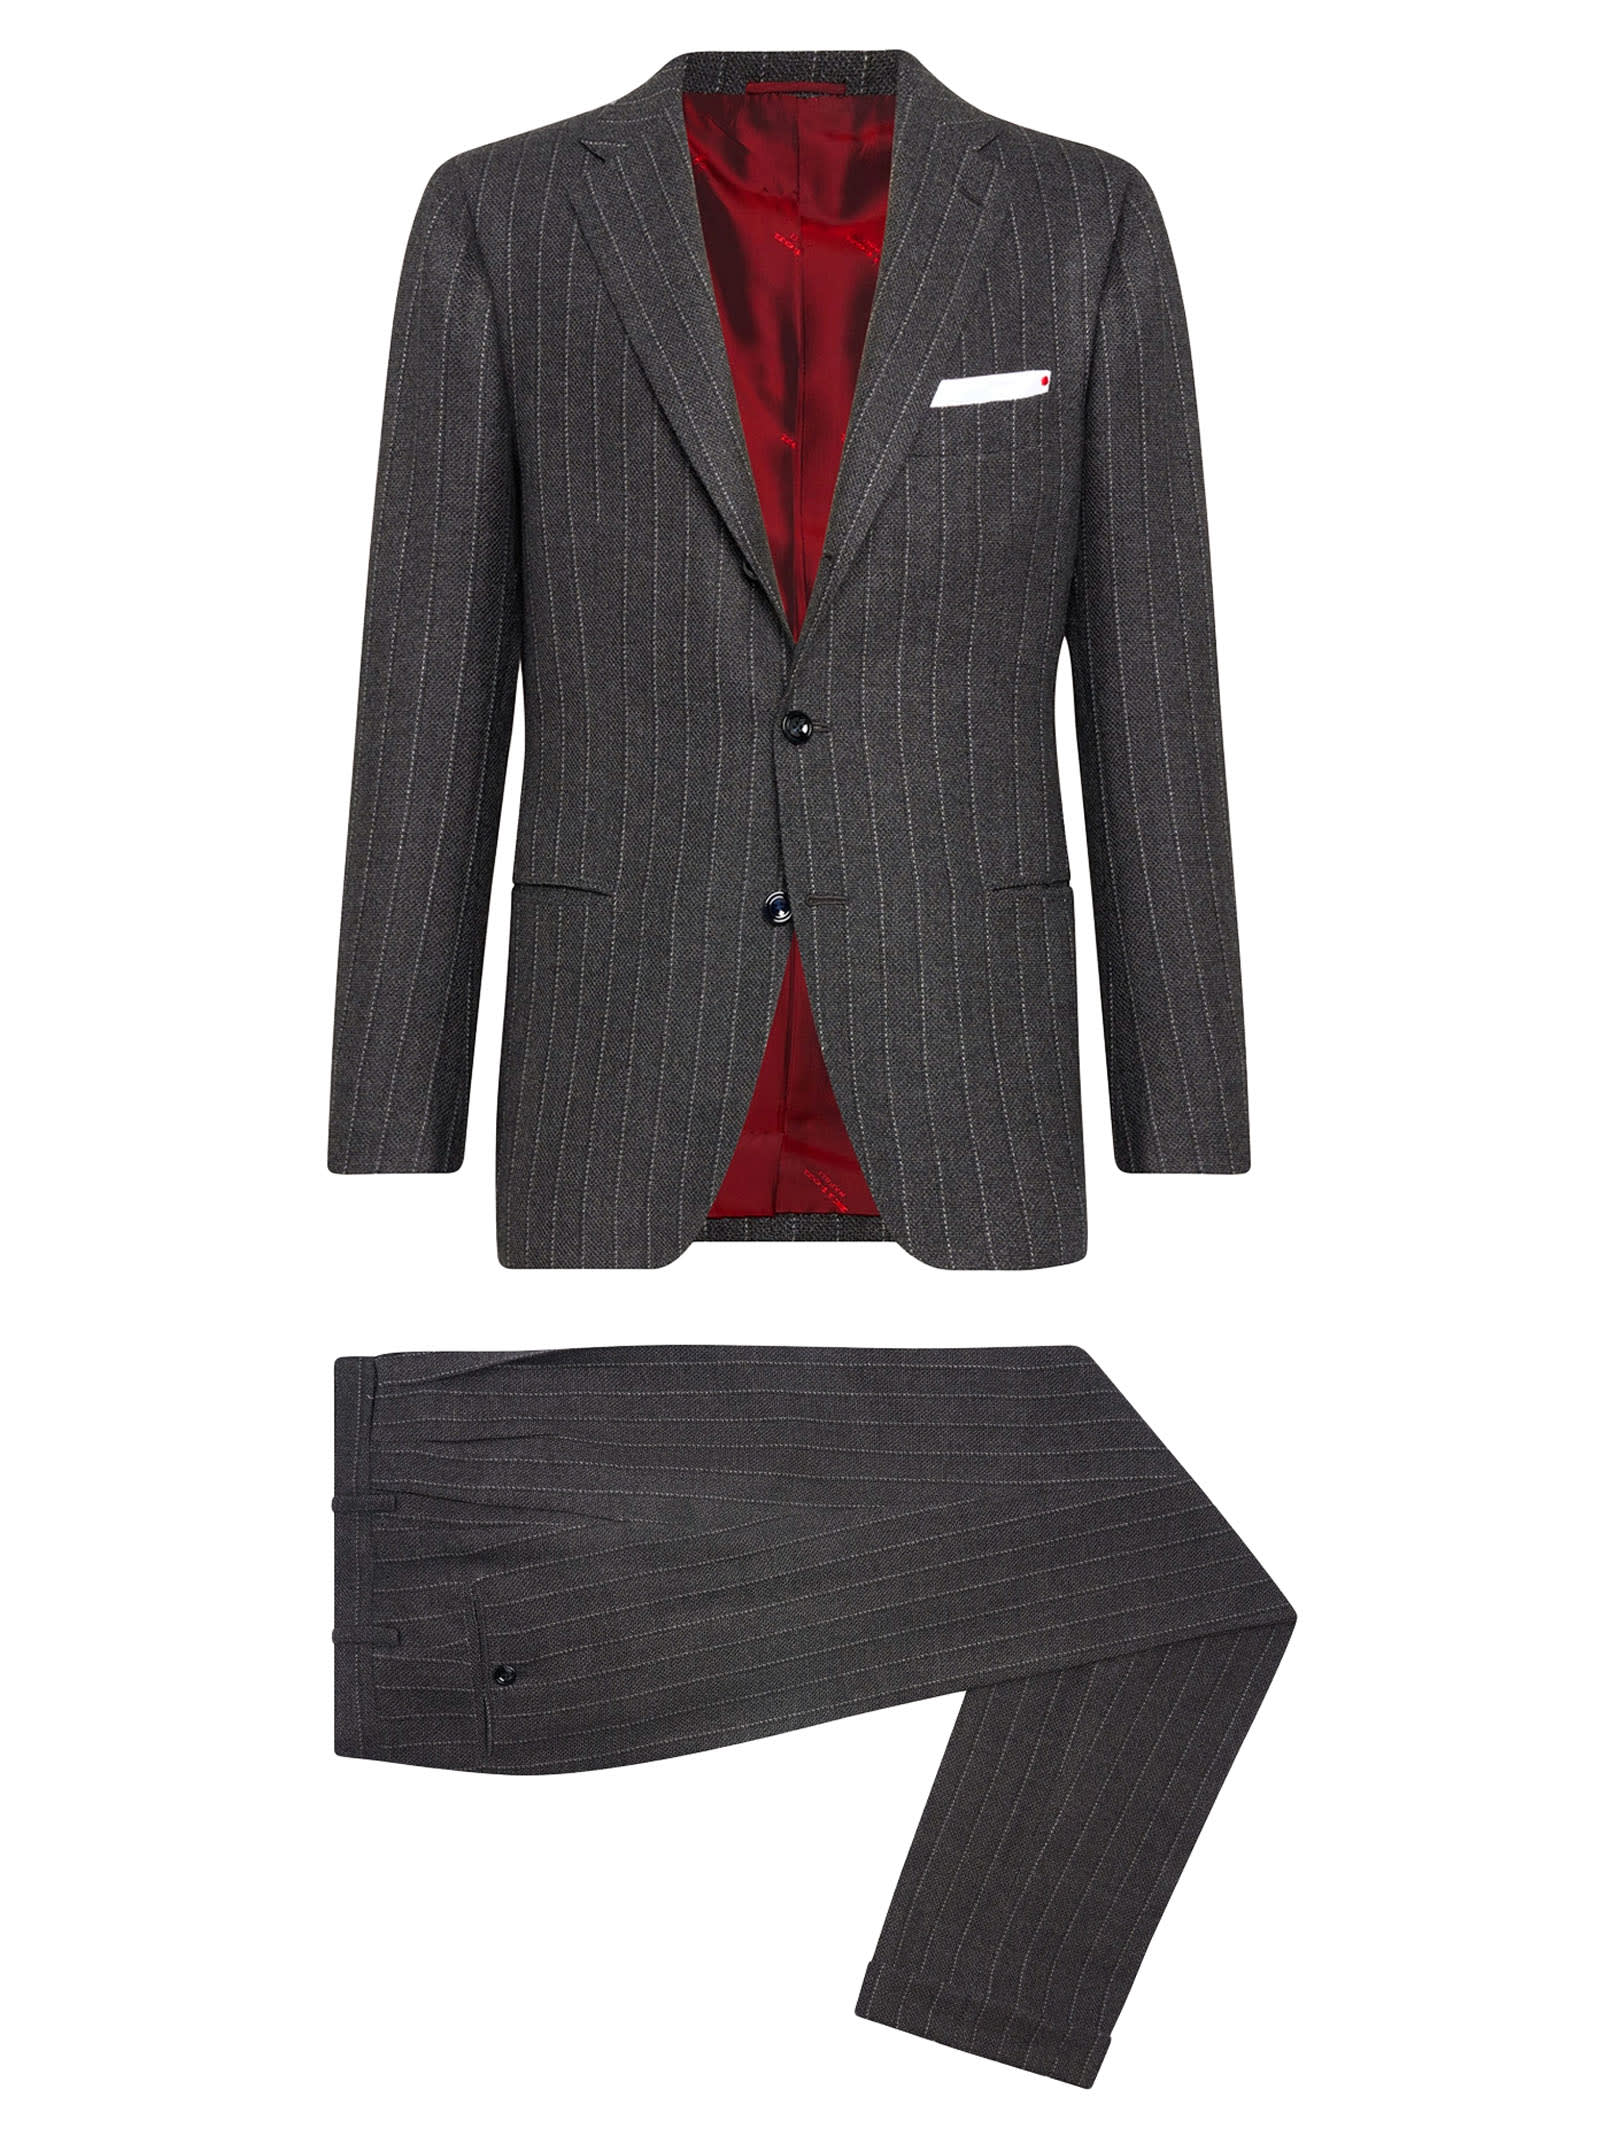 Kiton Men's Pinstripe Wool Suit | Smart Closet